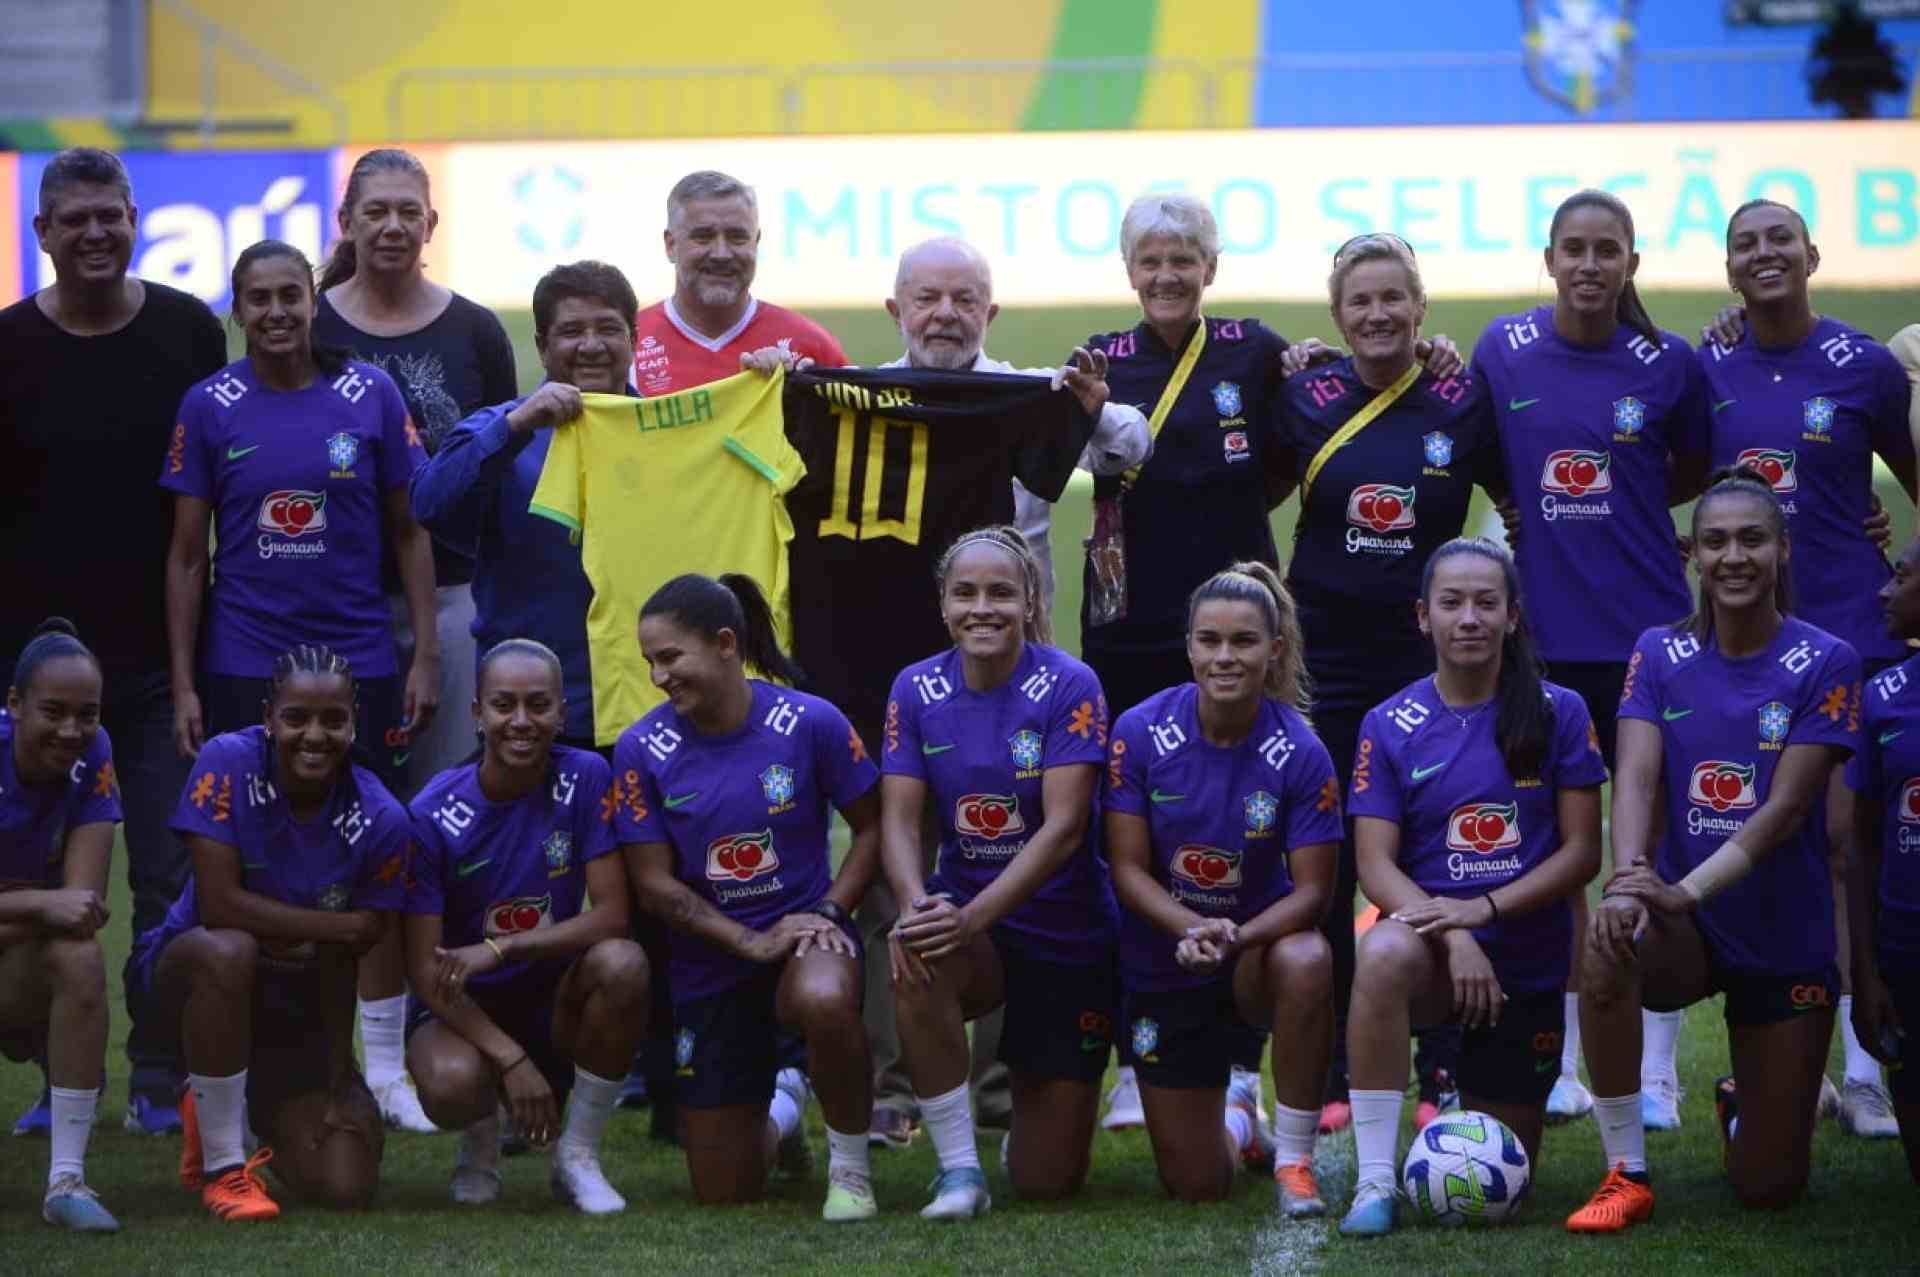 Jogadoras do DF são convocadas para a Copa; Seleção disputa amistoso em  Brasília no domingo